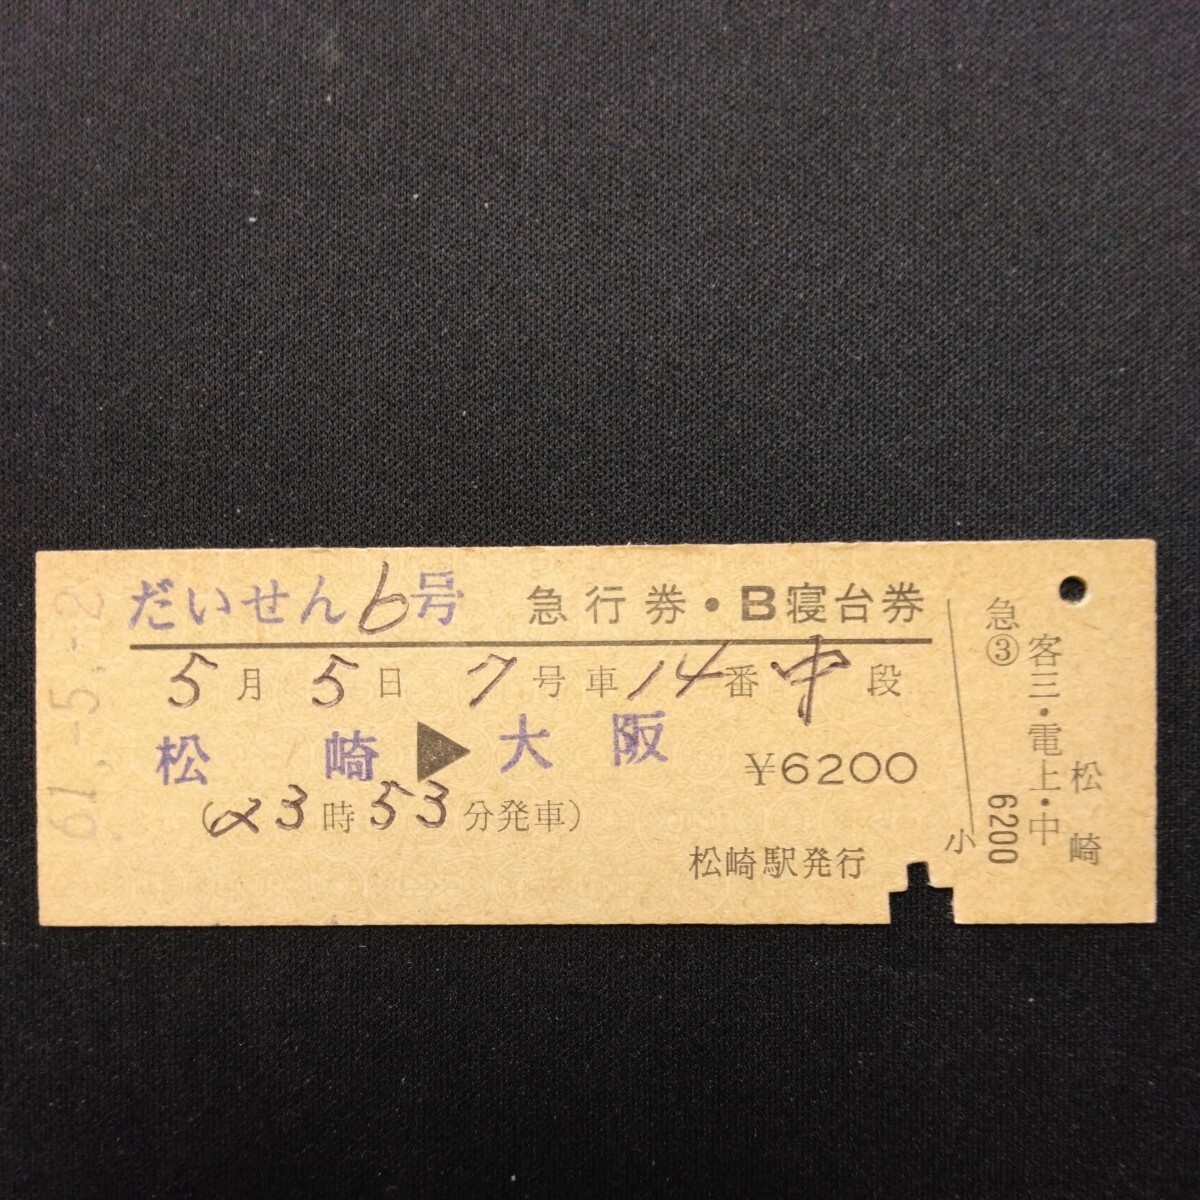 【00016】だいせん6号 急行券・B寝台券 松崎→大阪 D型 硬券 国鉄 古い切符_画像1